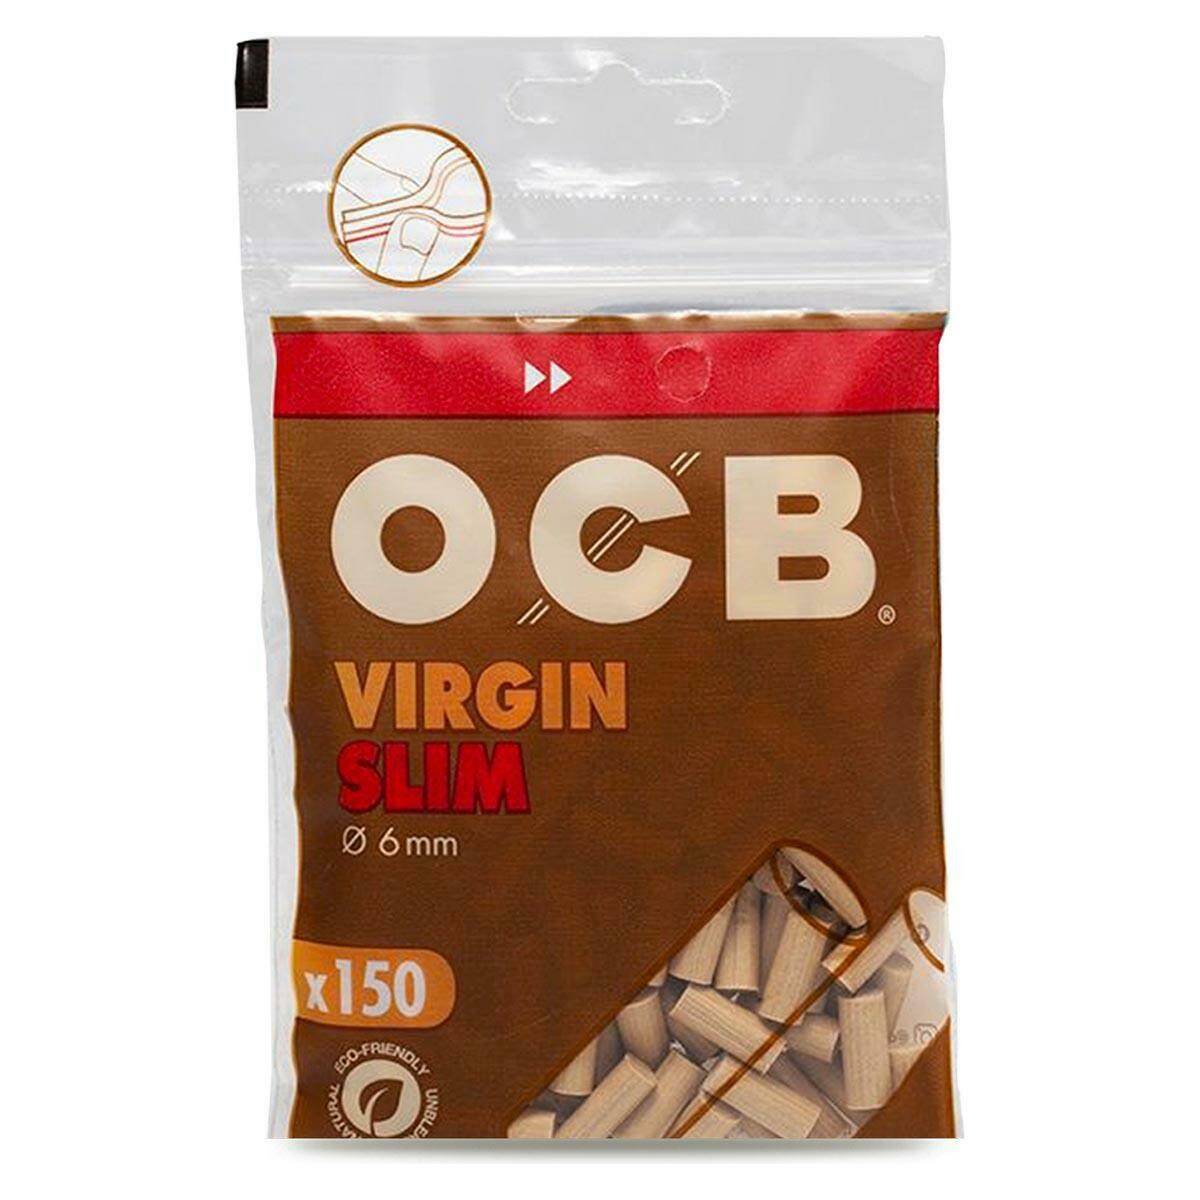 OCB Ø6 Slim Virgin Brown Filters